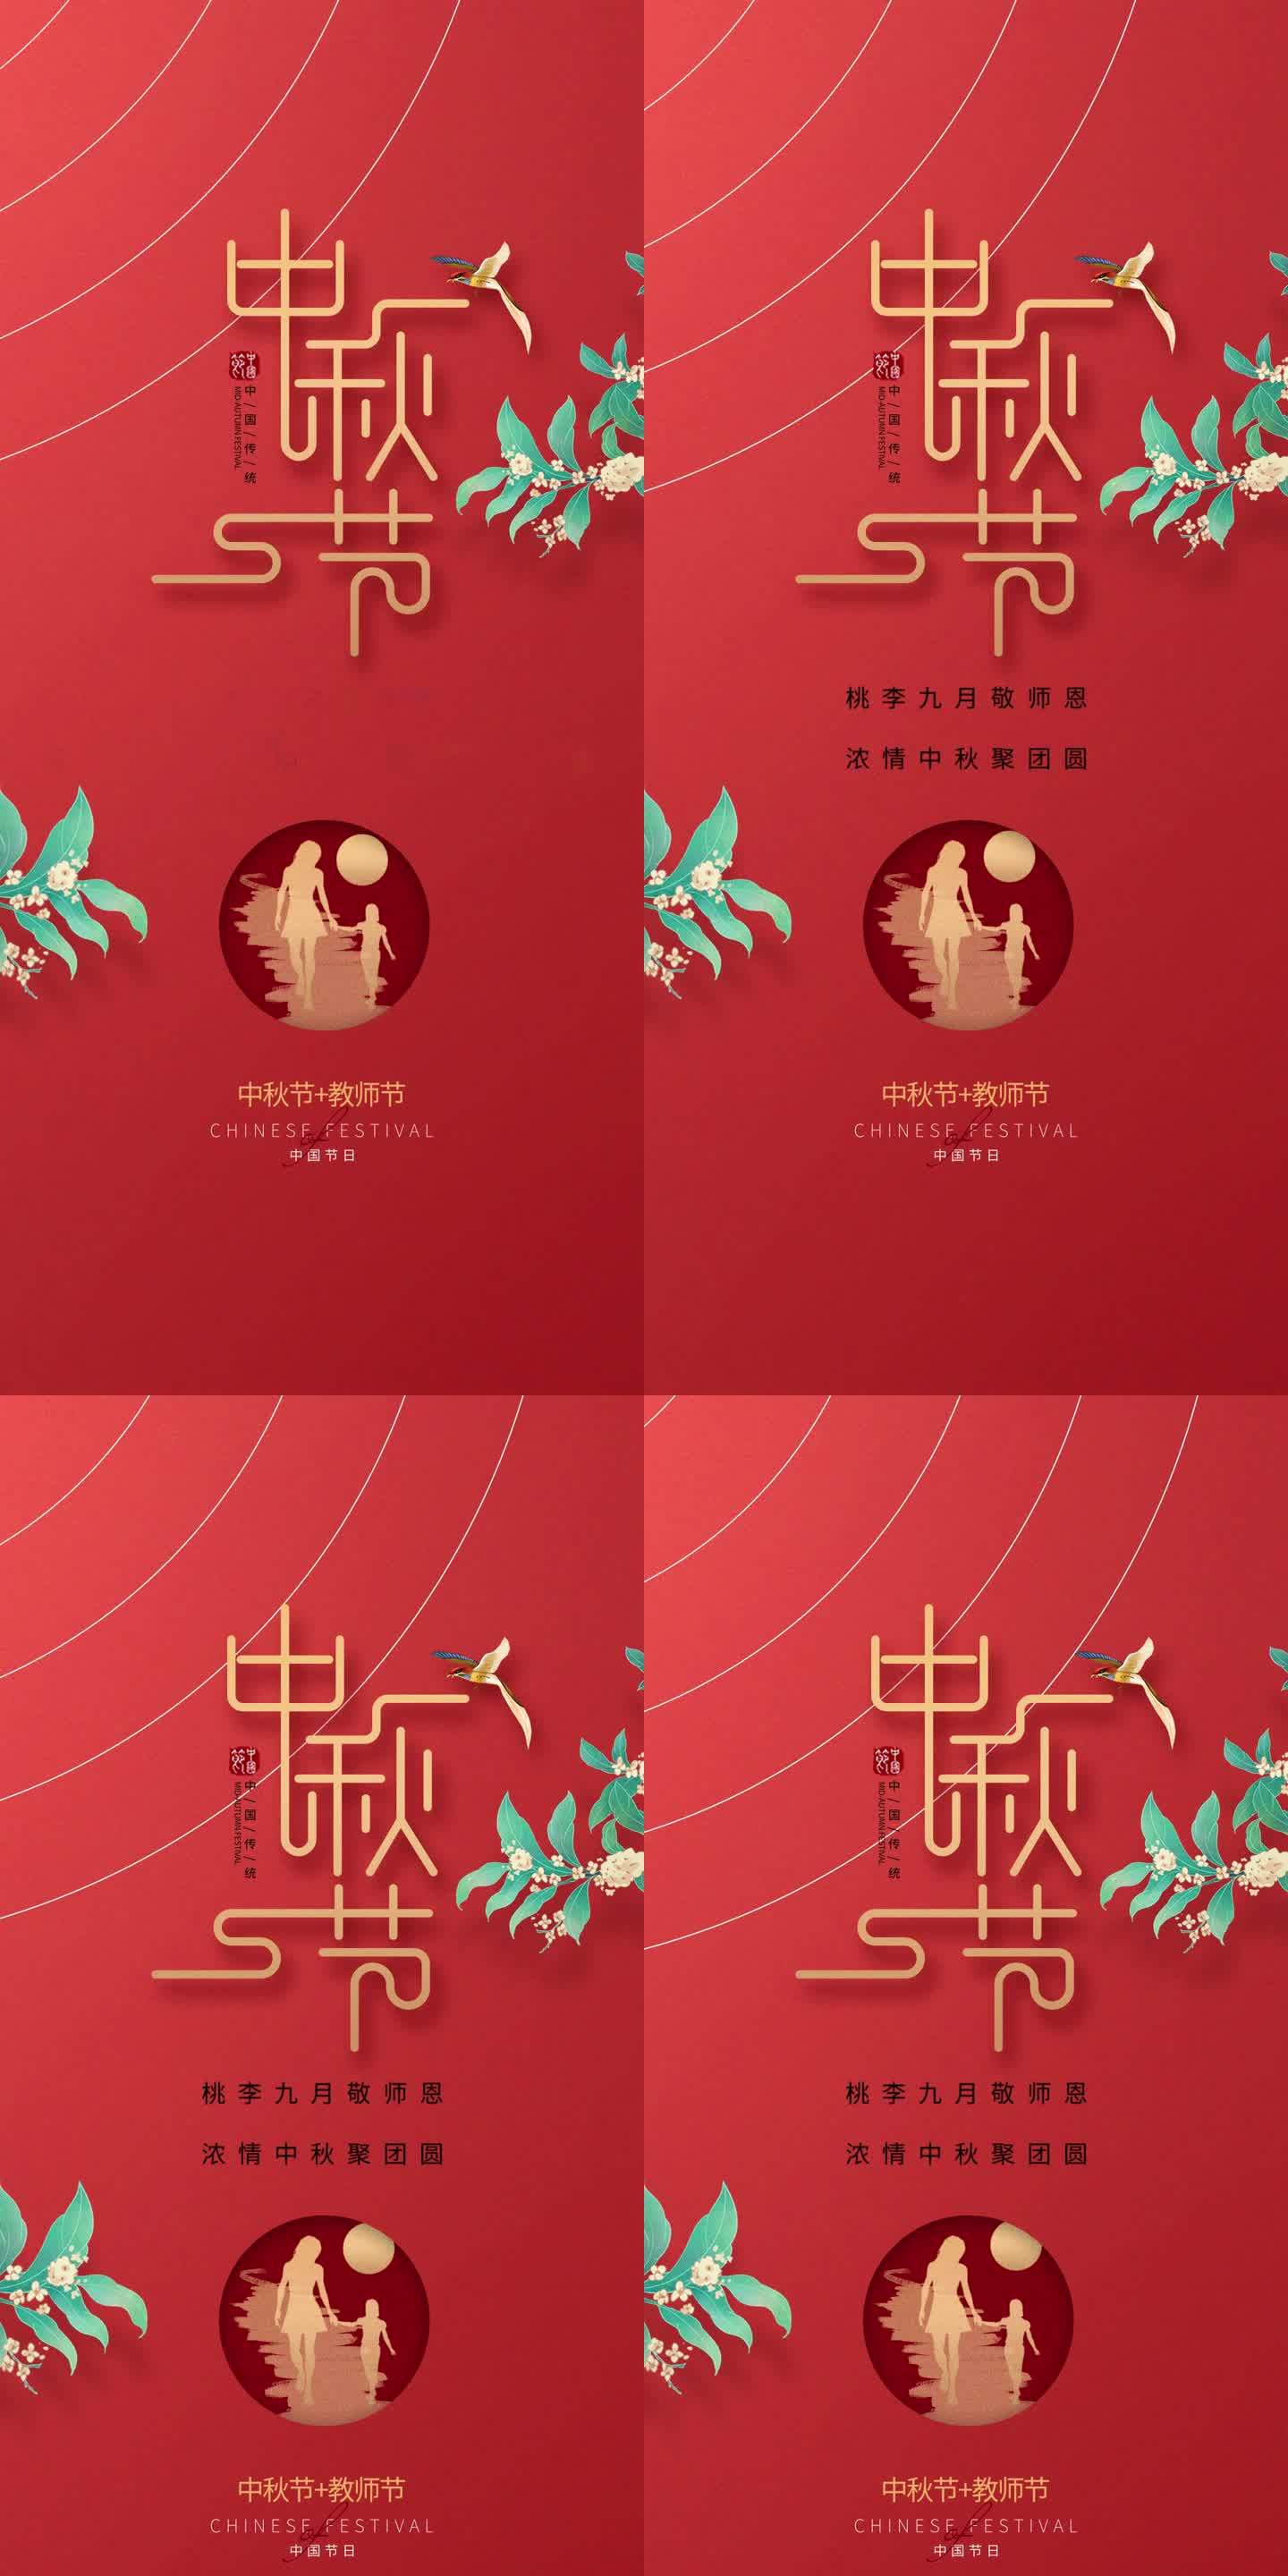 中国节日之中秋节和教师节